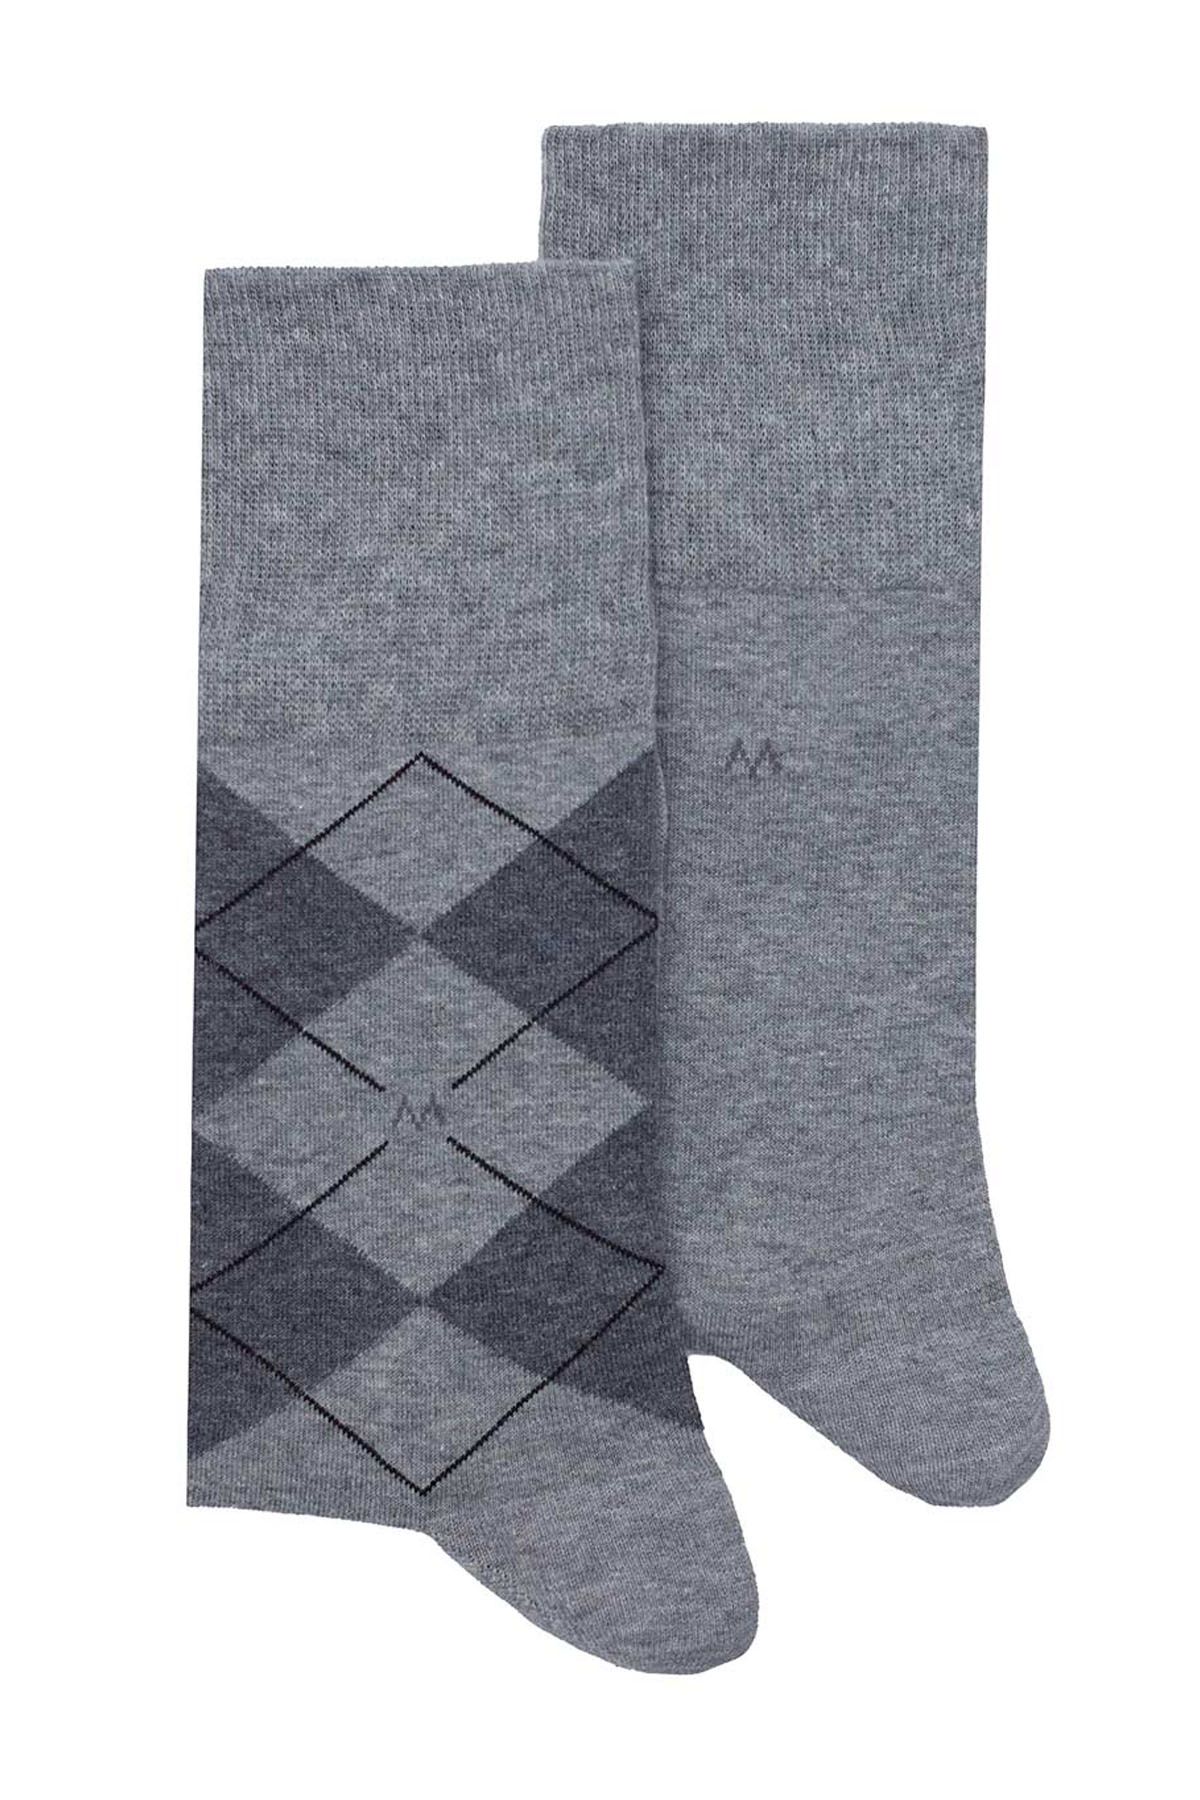 Hemington Baklava Desenli Açık Gri Pamuk Ikili Çorap Seti